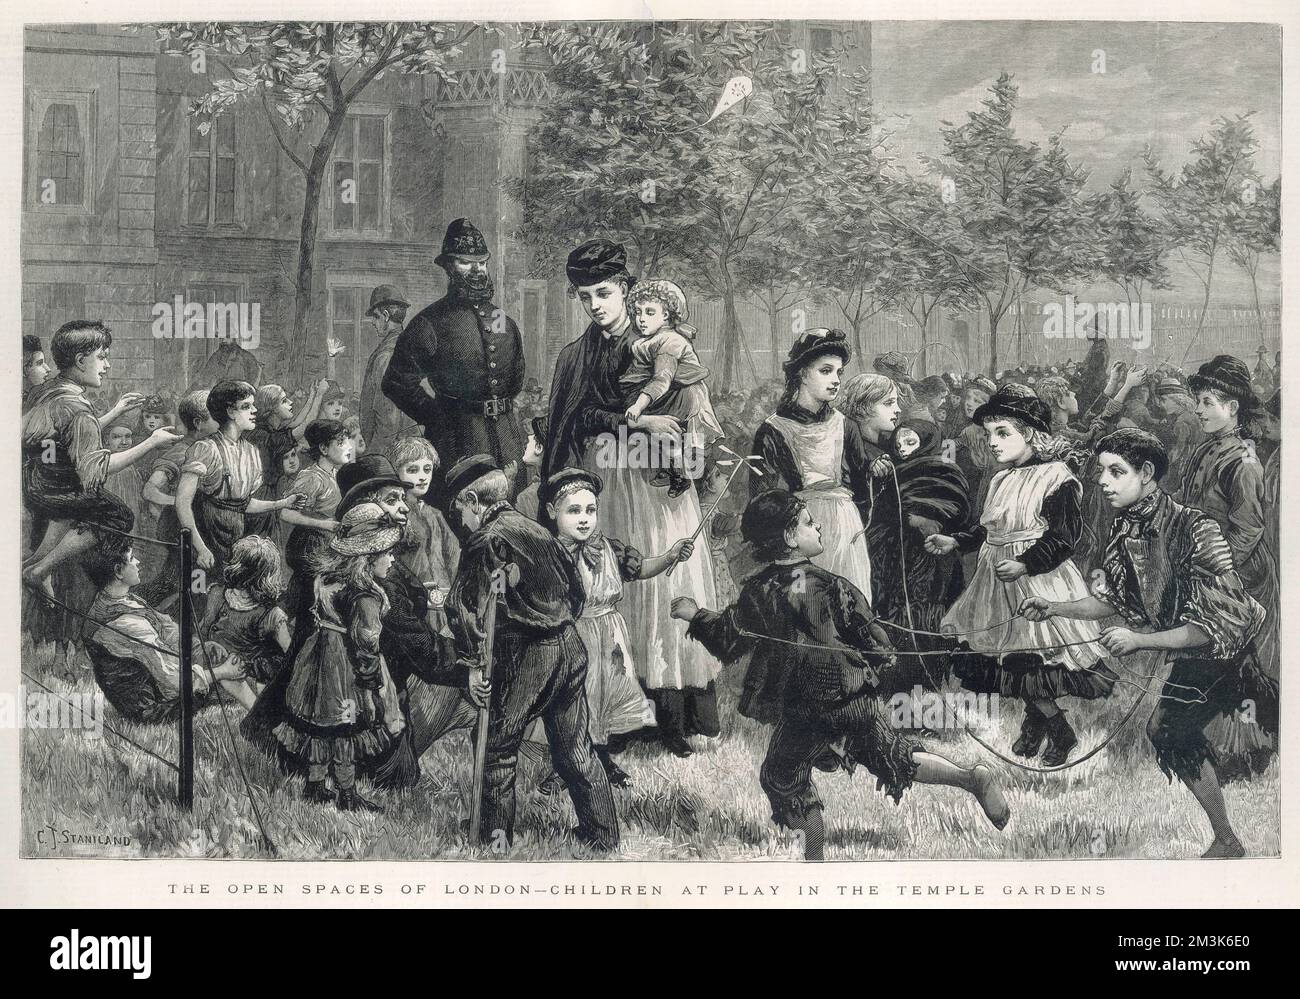 Un gruppo di bambini che giocano a Temple Gardens, Londra. Una bambinaia e un poliziotto sono mostrati mantenere la pace. Data: 1883 Foto Stock